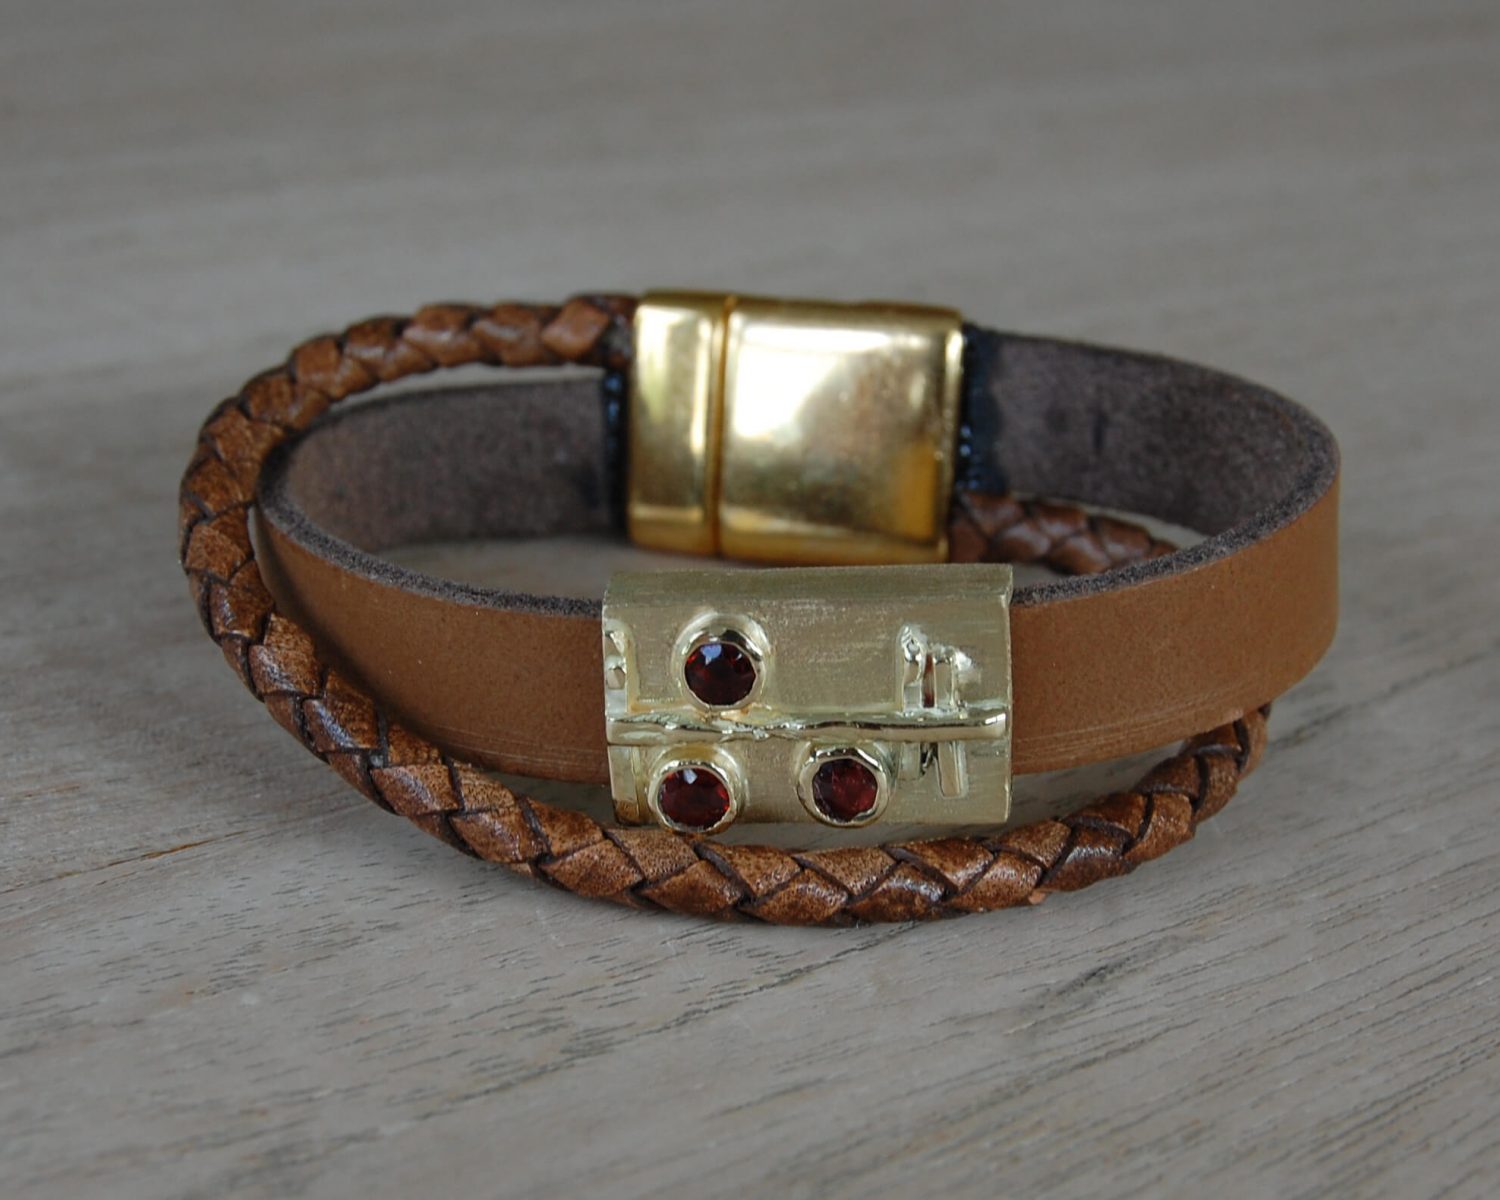 Leren armband met kastje gemaakt uit aangeleverde gouden sieraden - inclusief 3 opnieuw gezette robijnen.